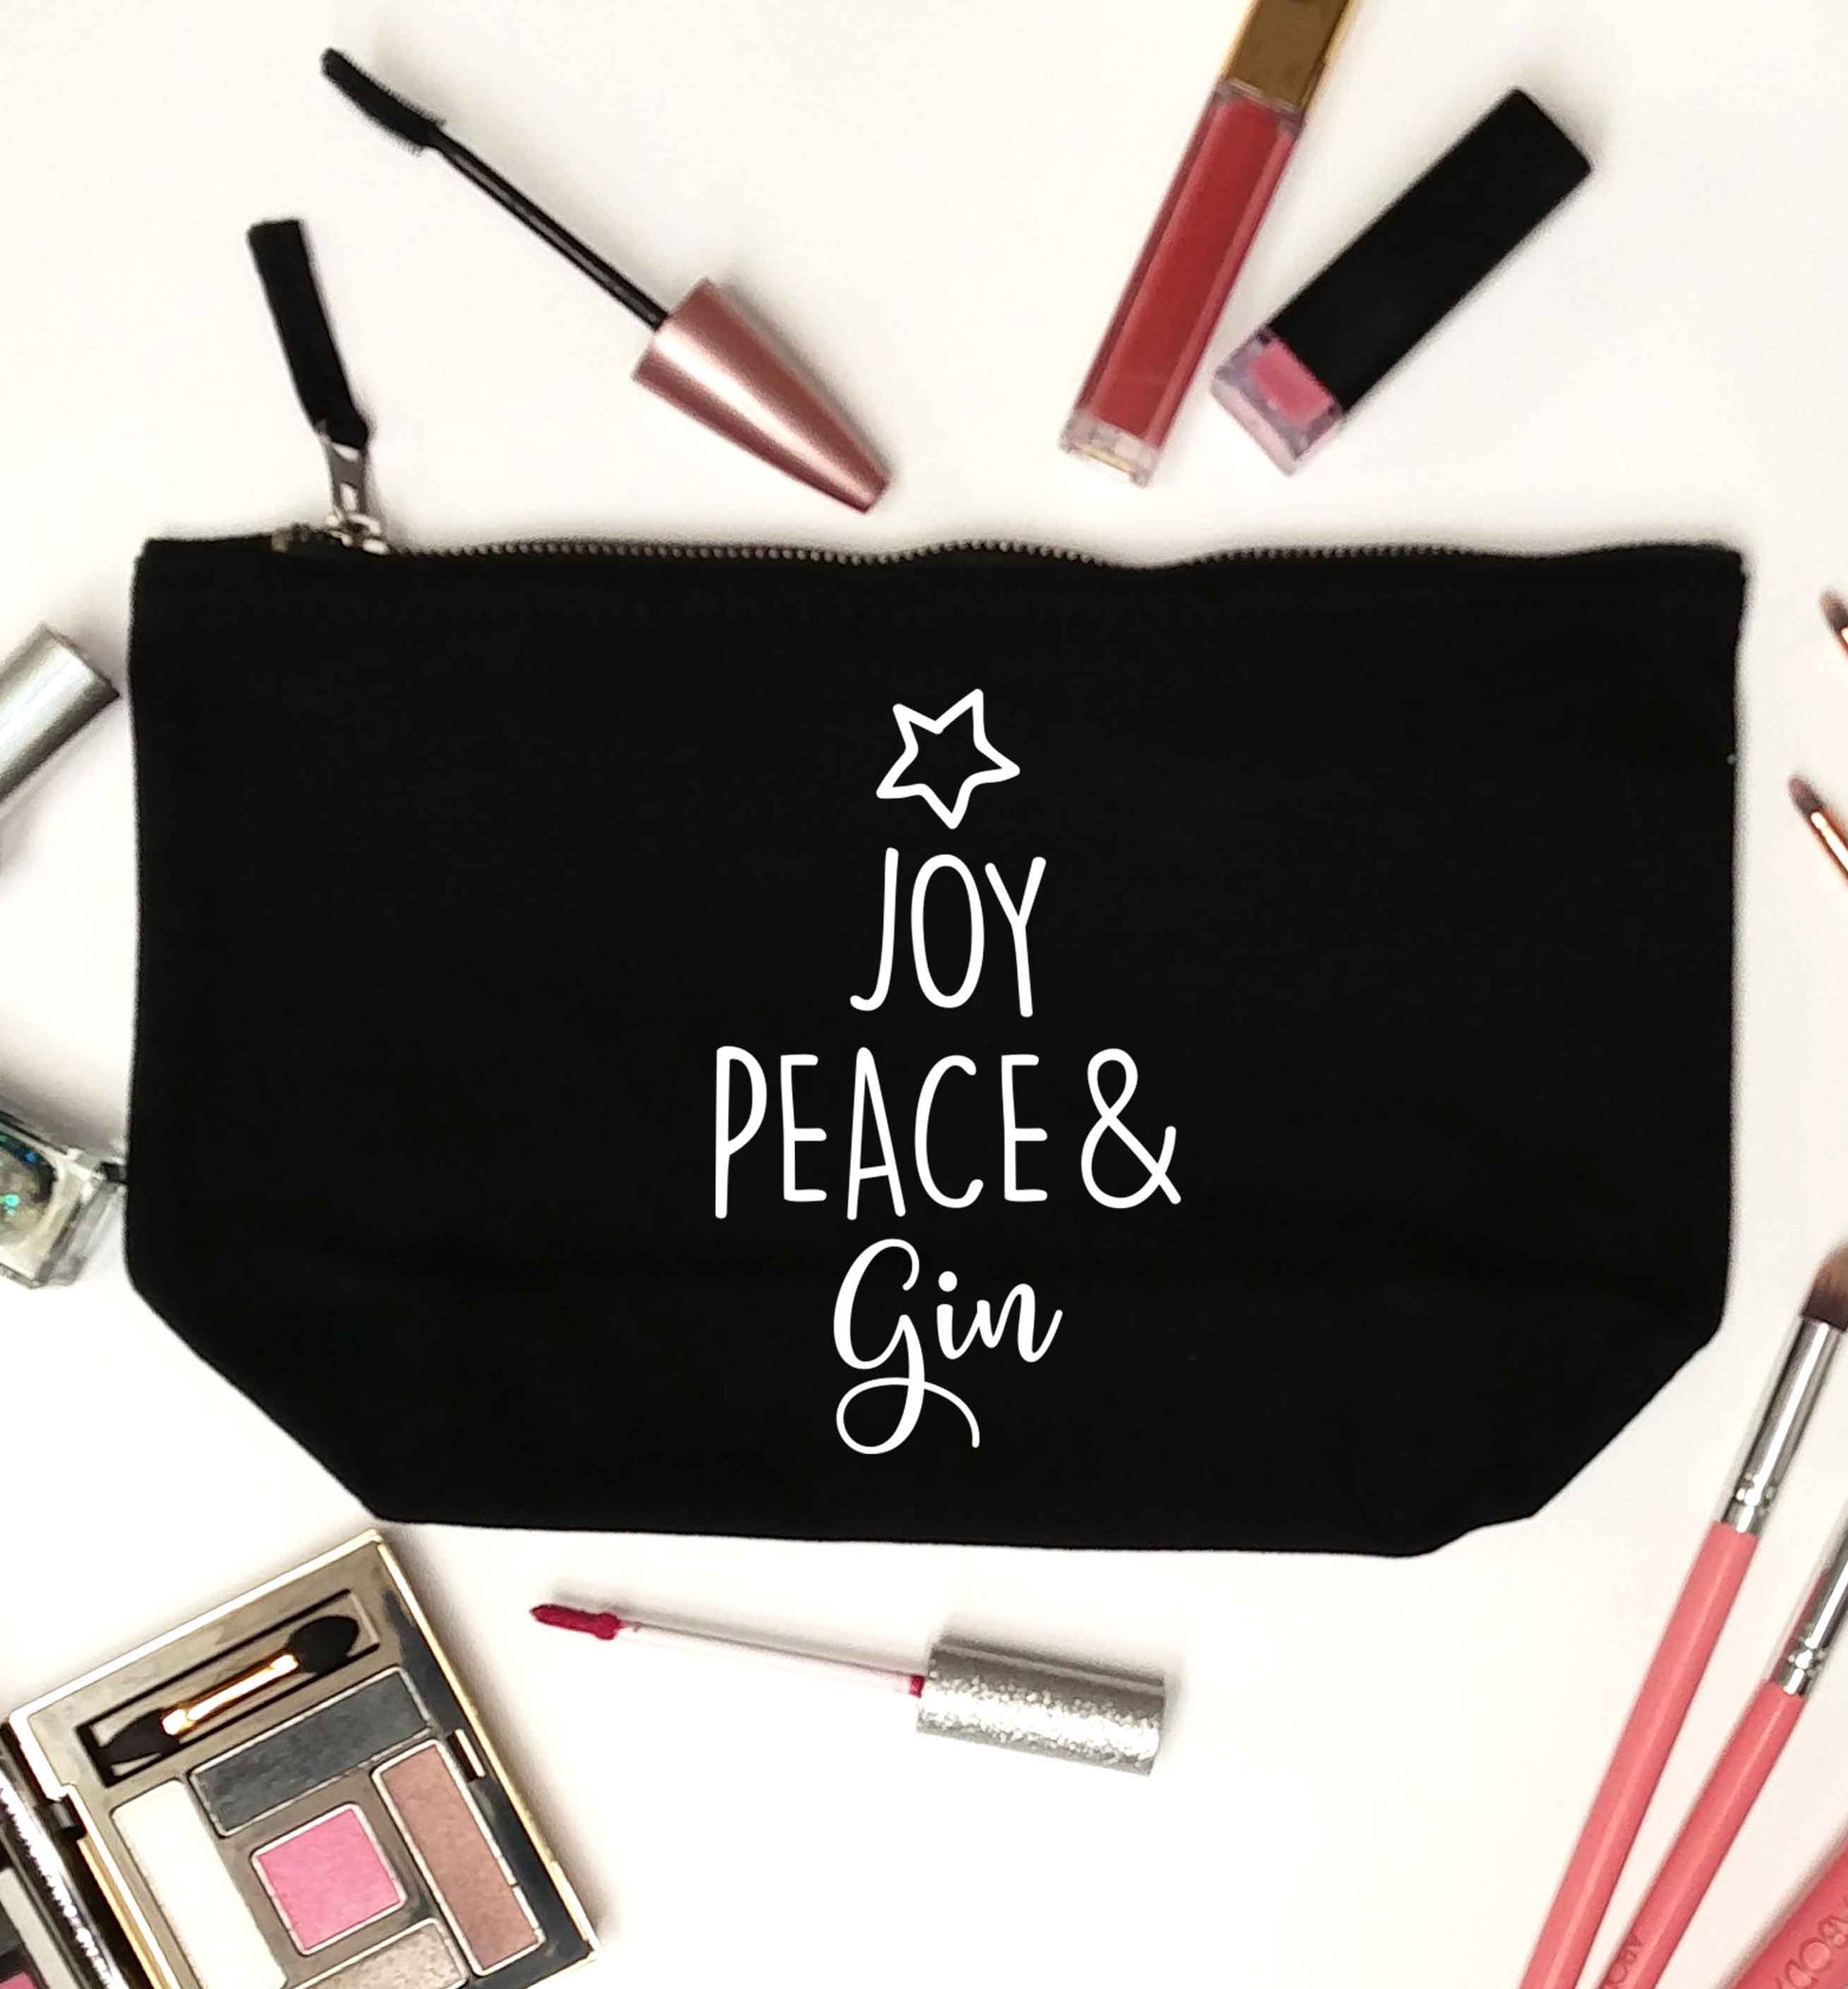 Joy peace and gin black makeup bag